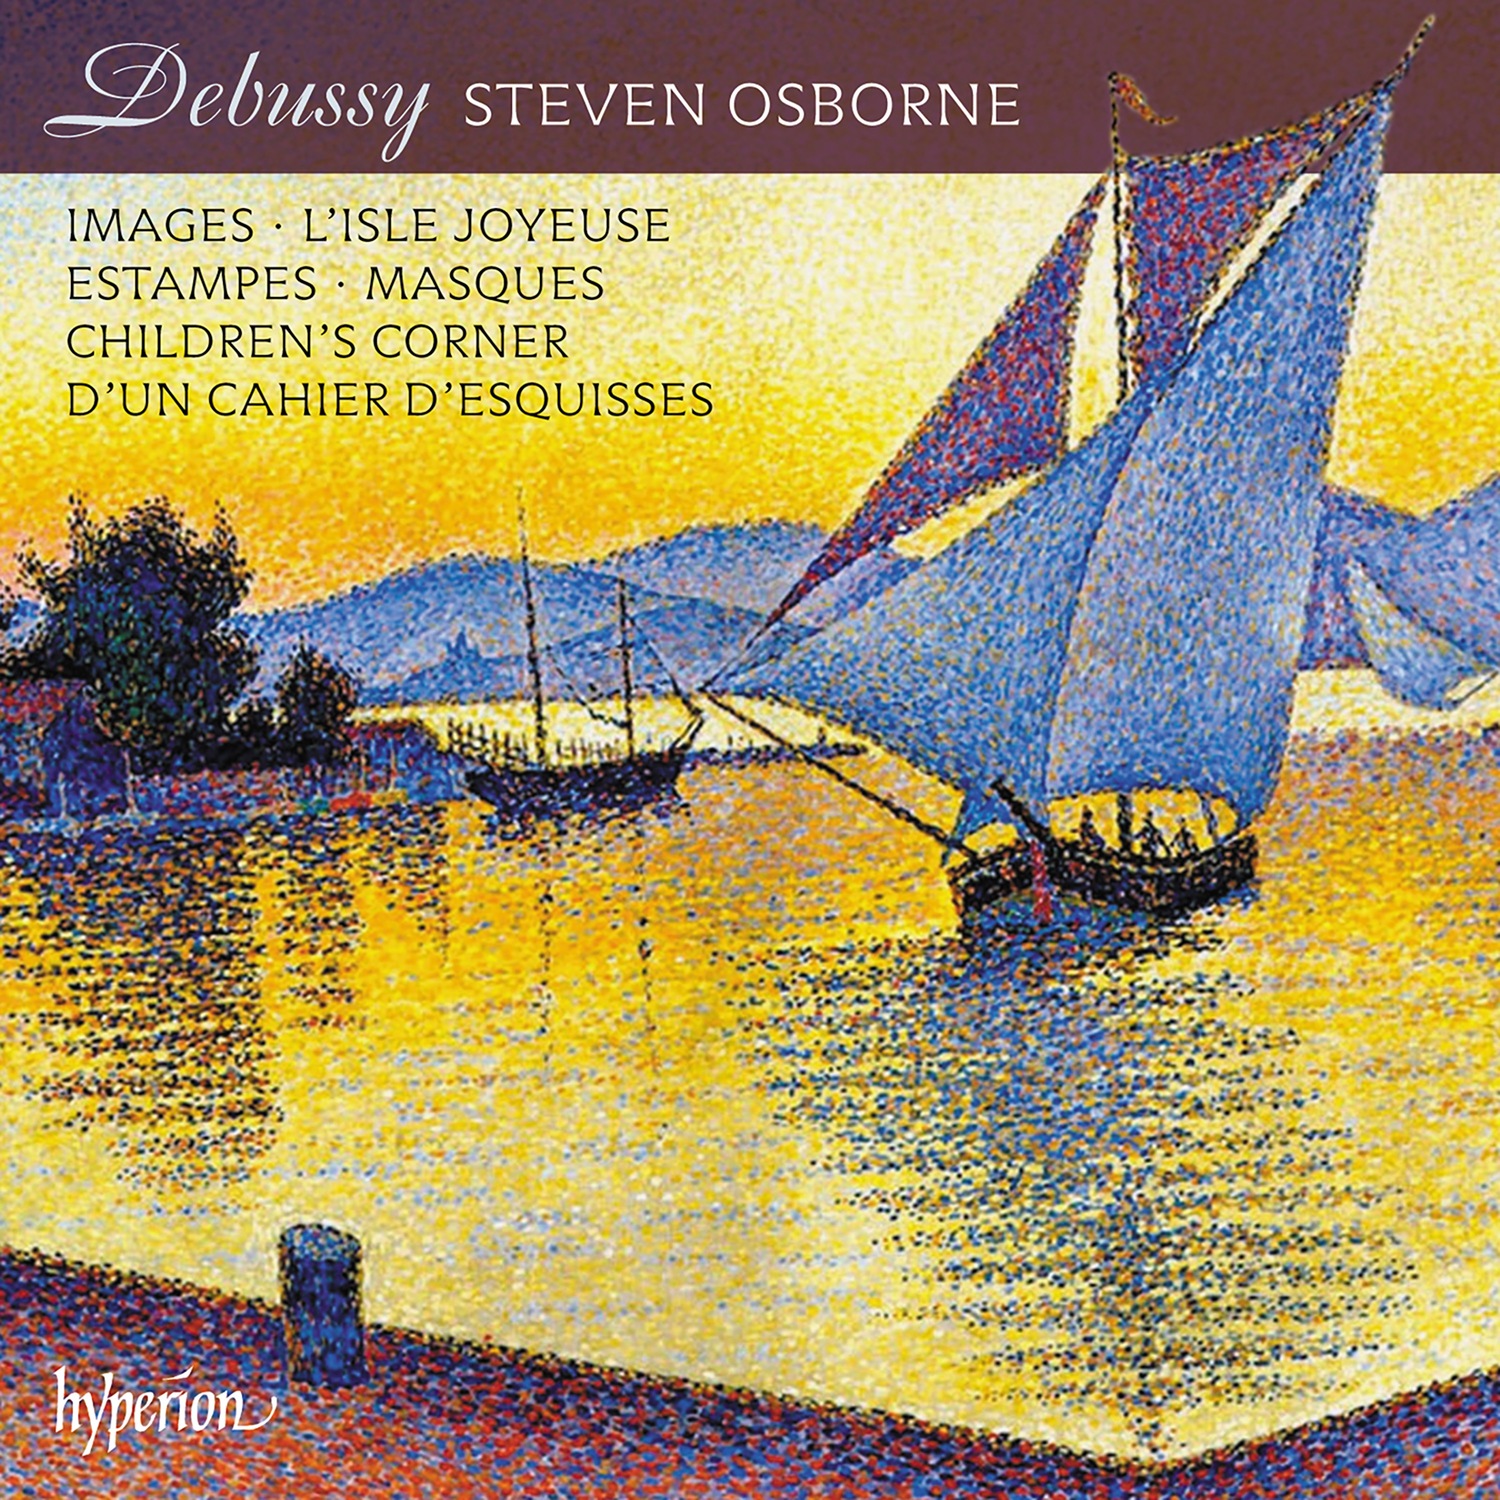 Steven Osborne, Debussy, Hyperion